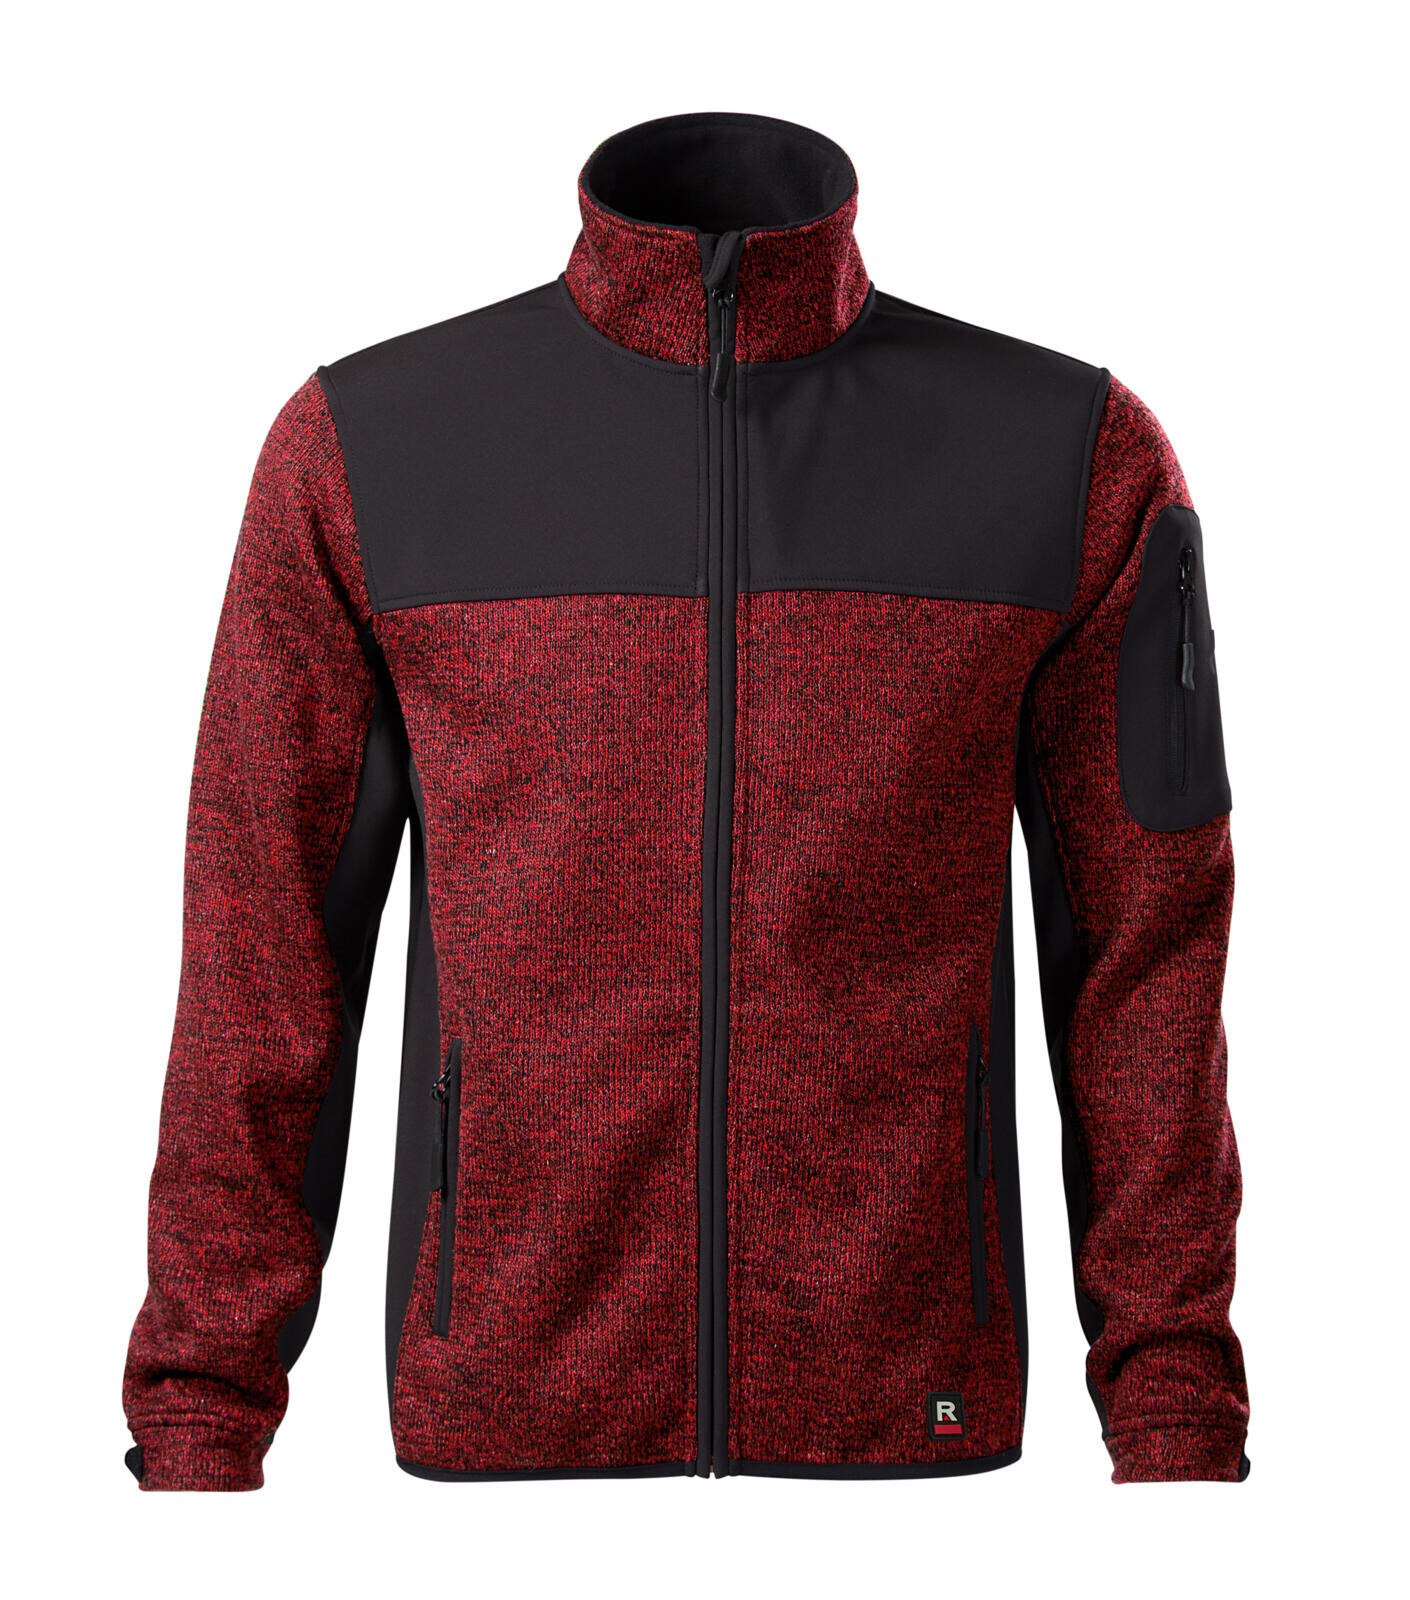 Pánska softshellová bunda Rimeck Casual 550 - veľkosť: S, farba: knit marlboro červená